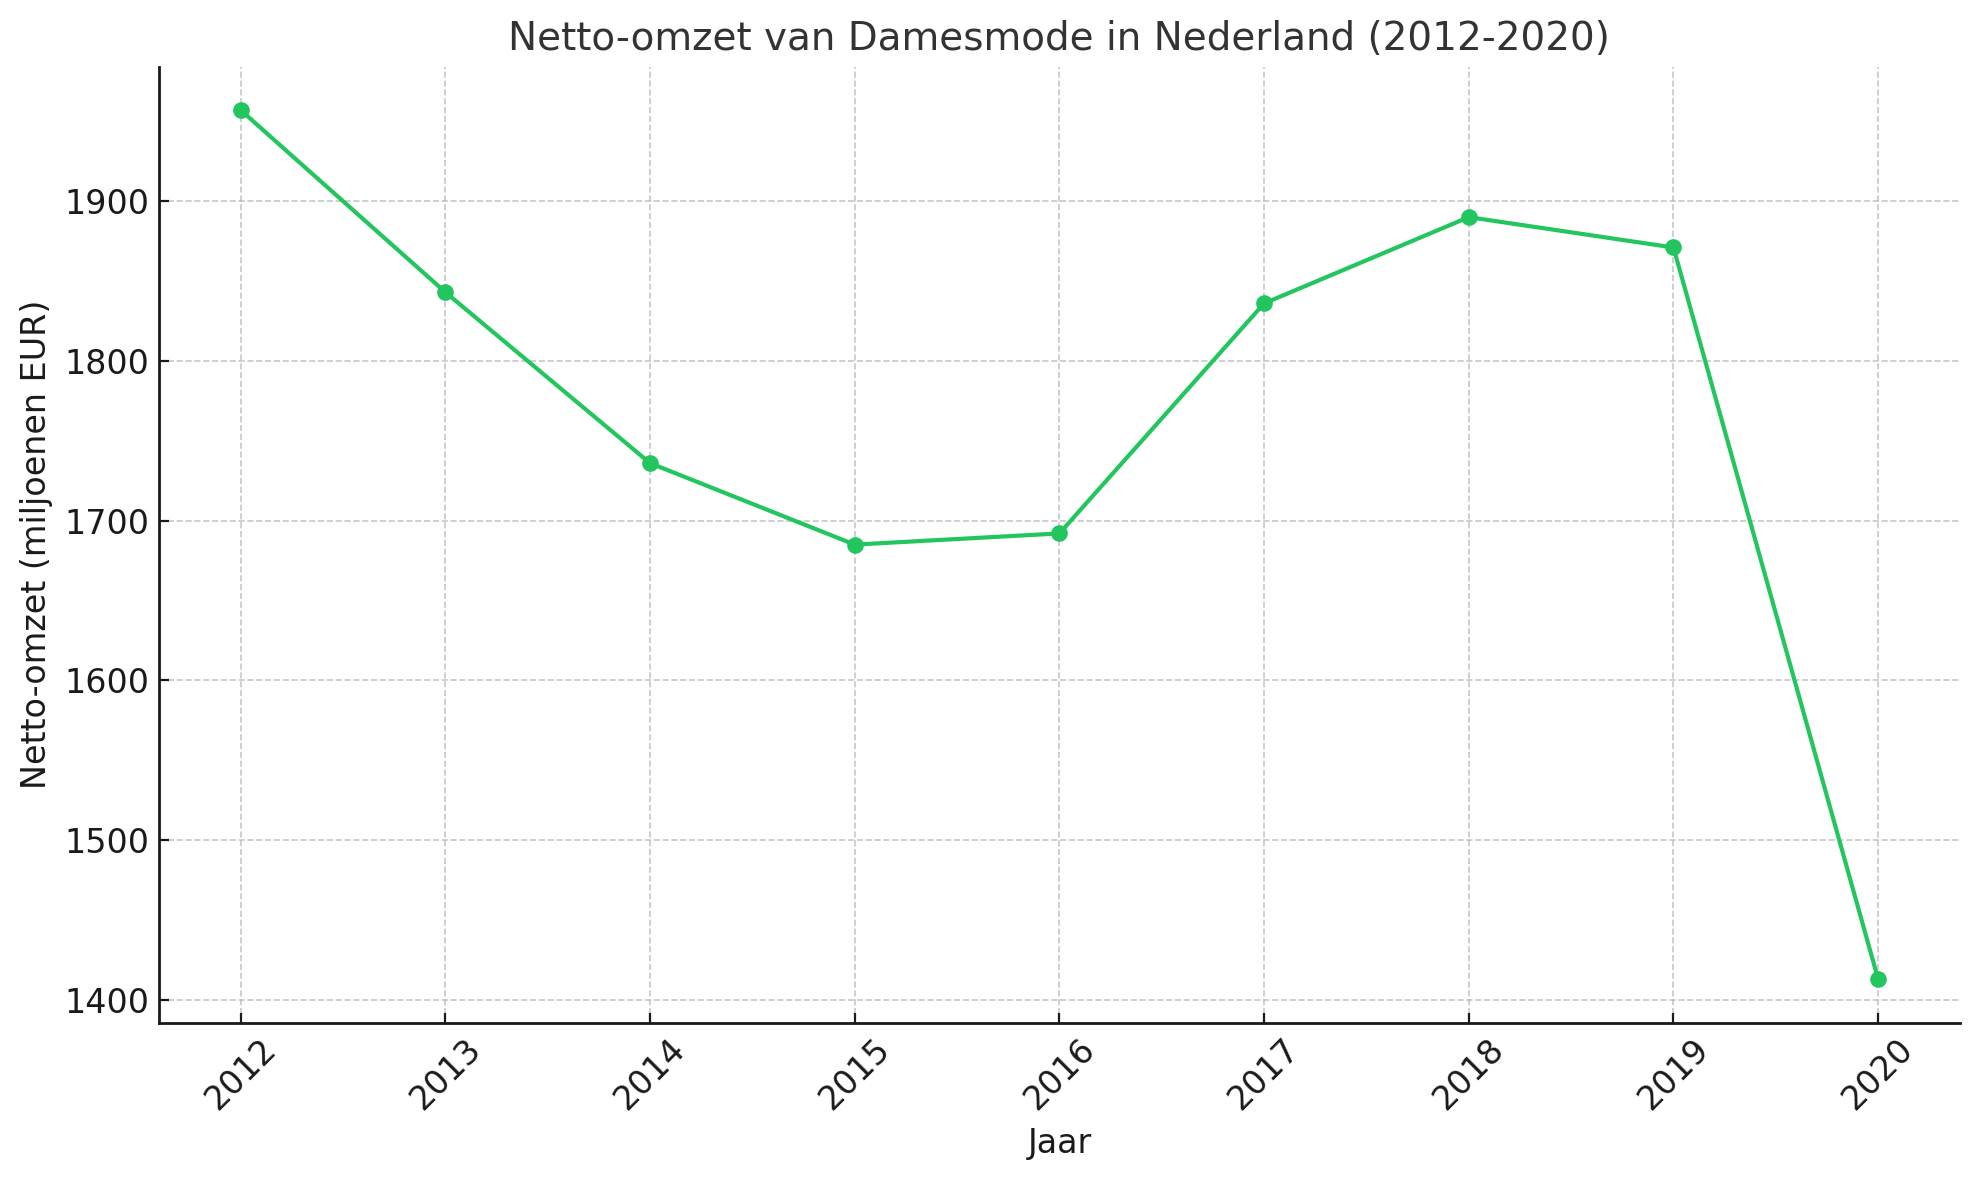 Netto omzet damesmode in Nederland